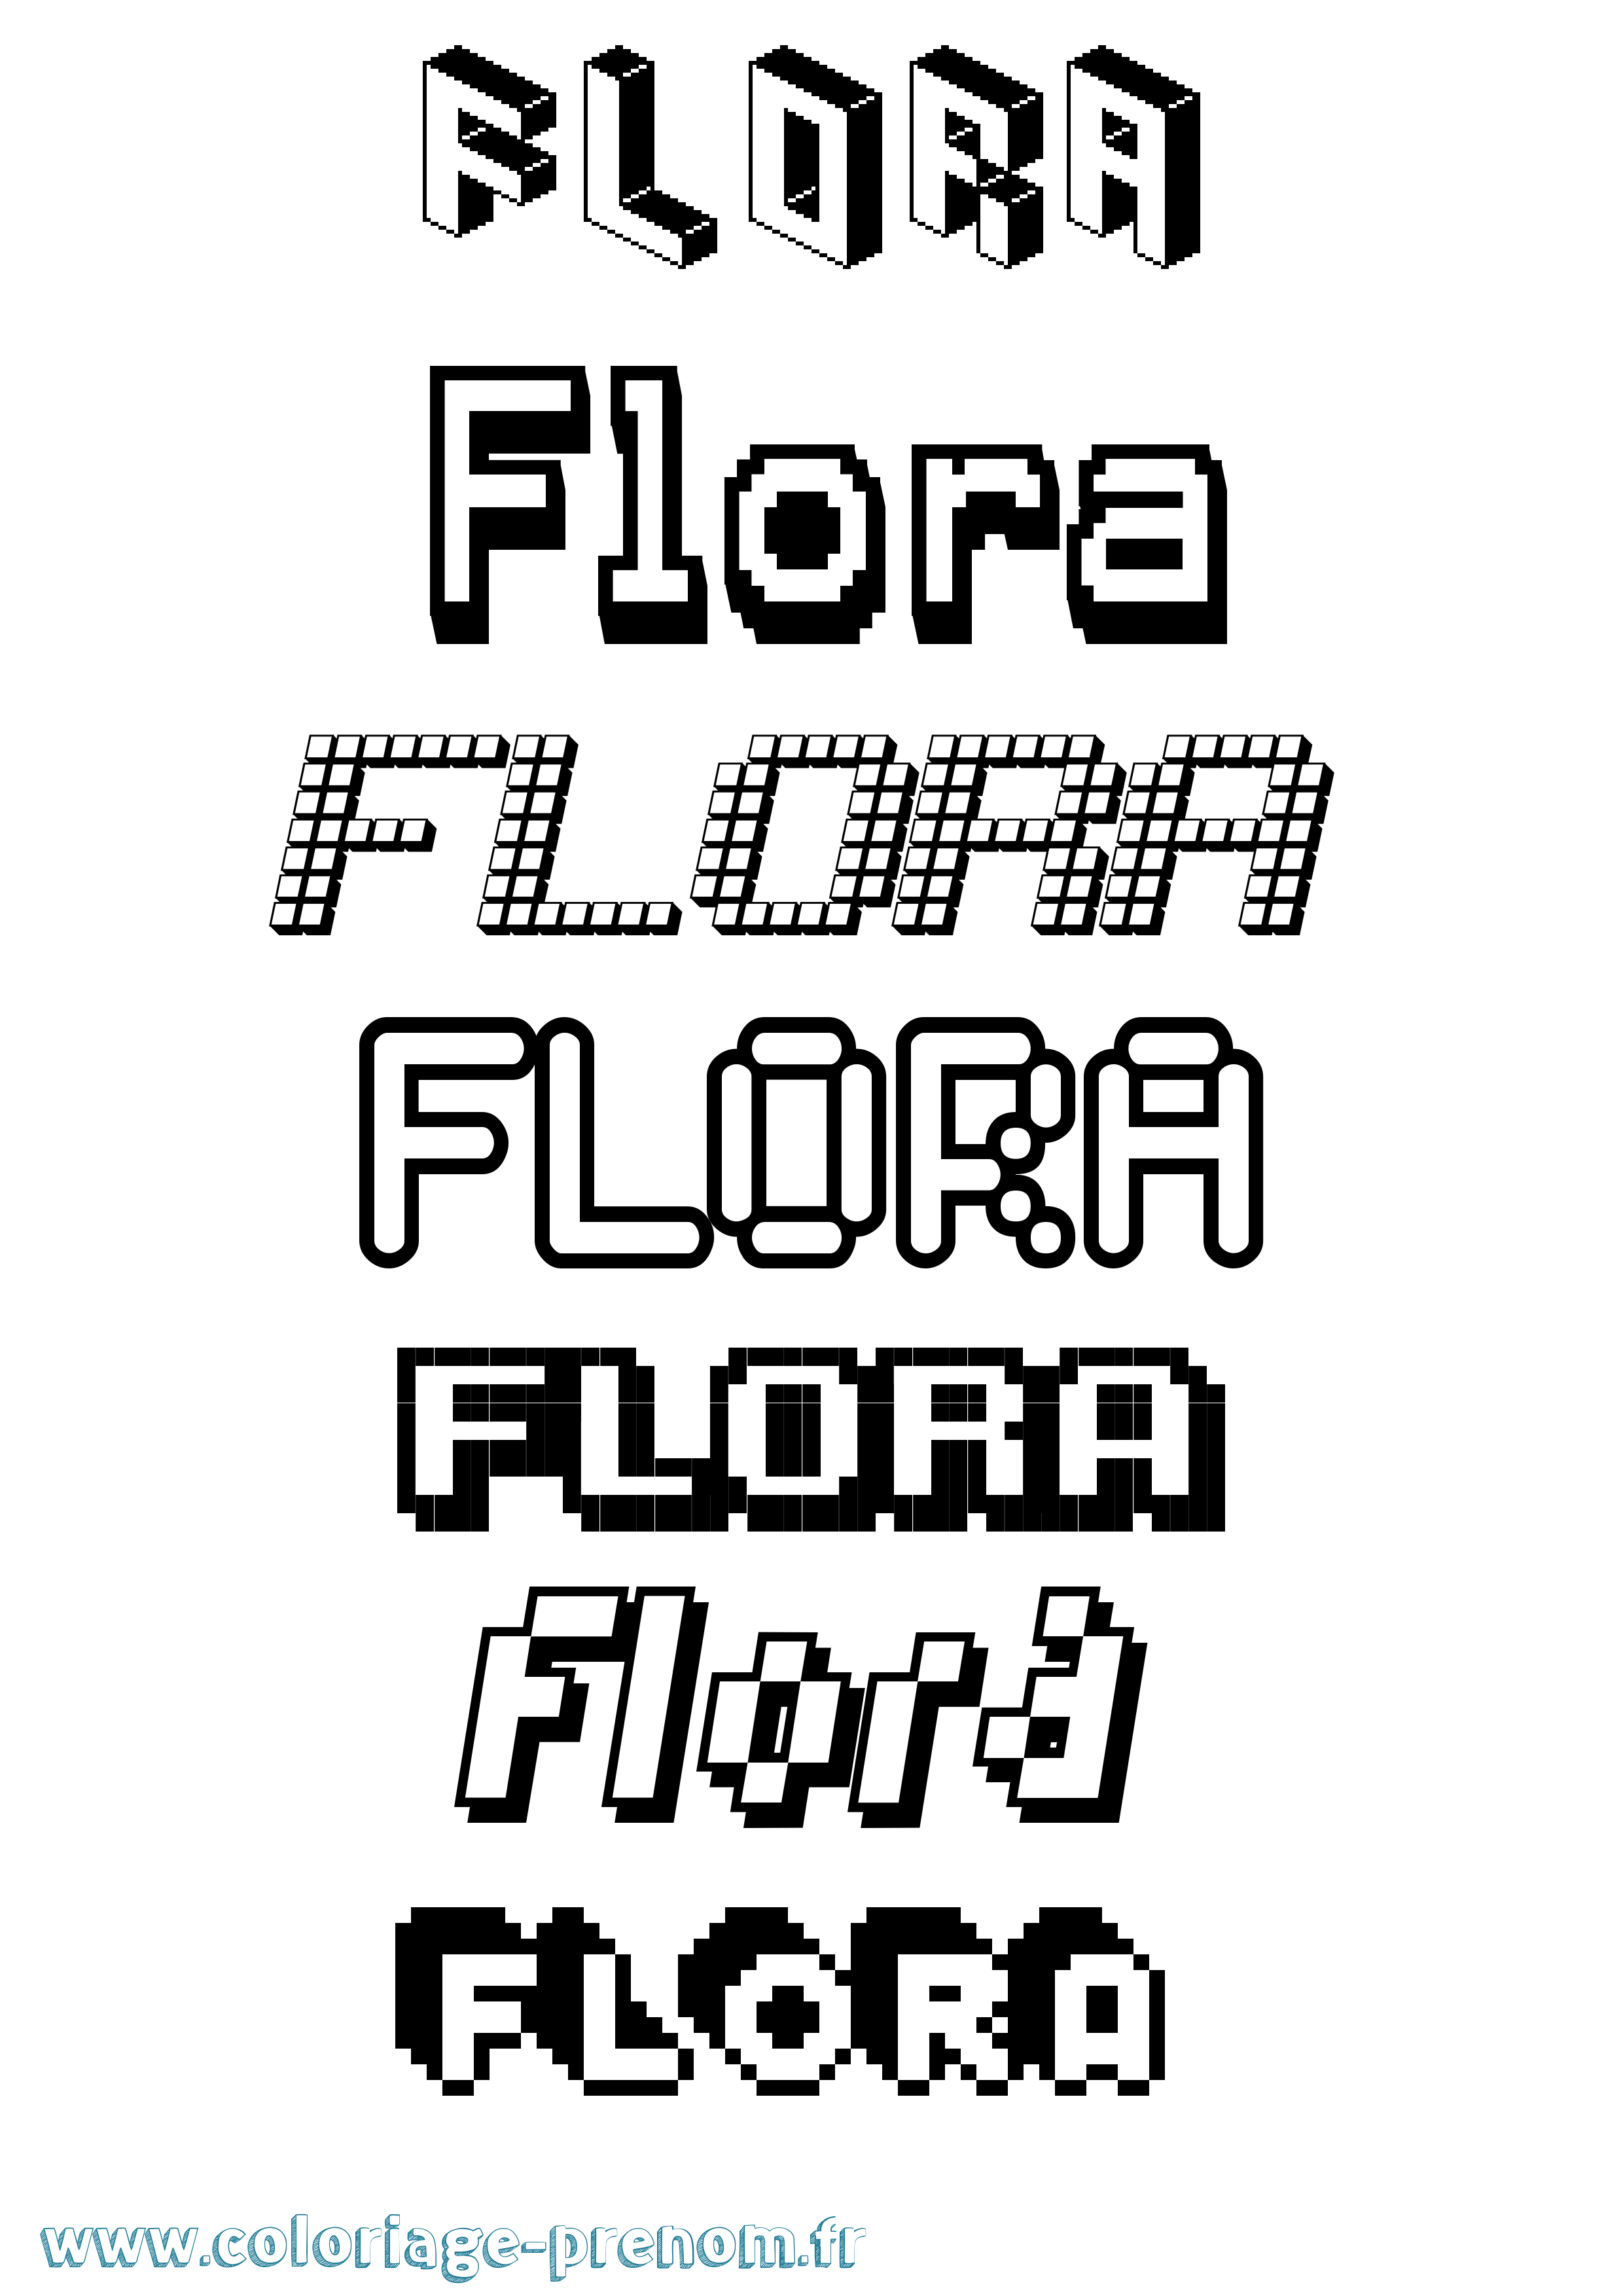 Coloriage prénom Flora